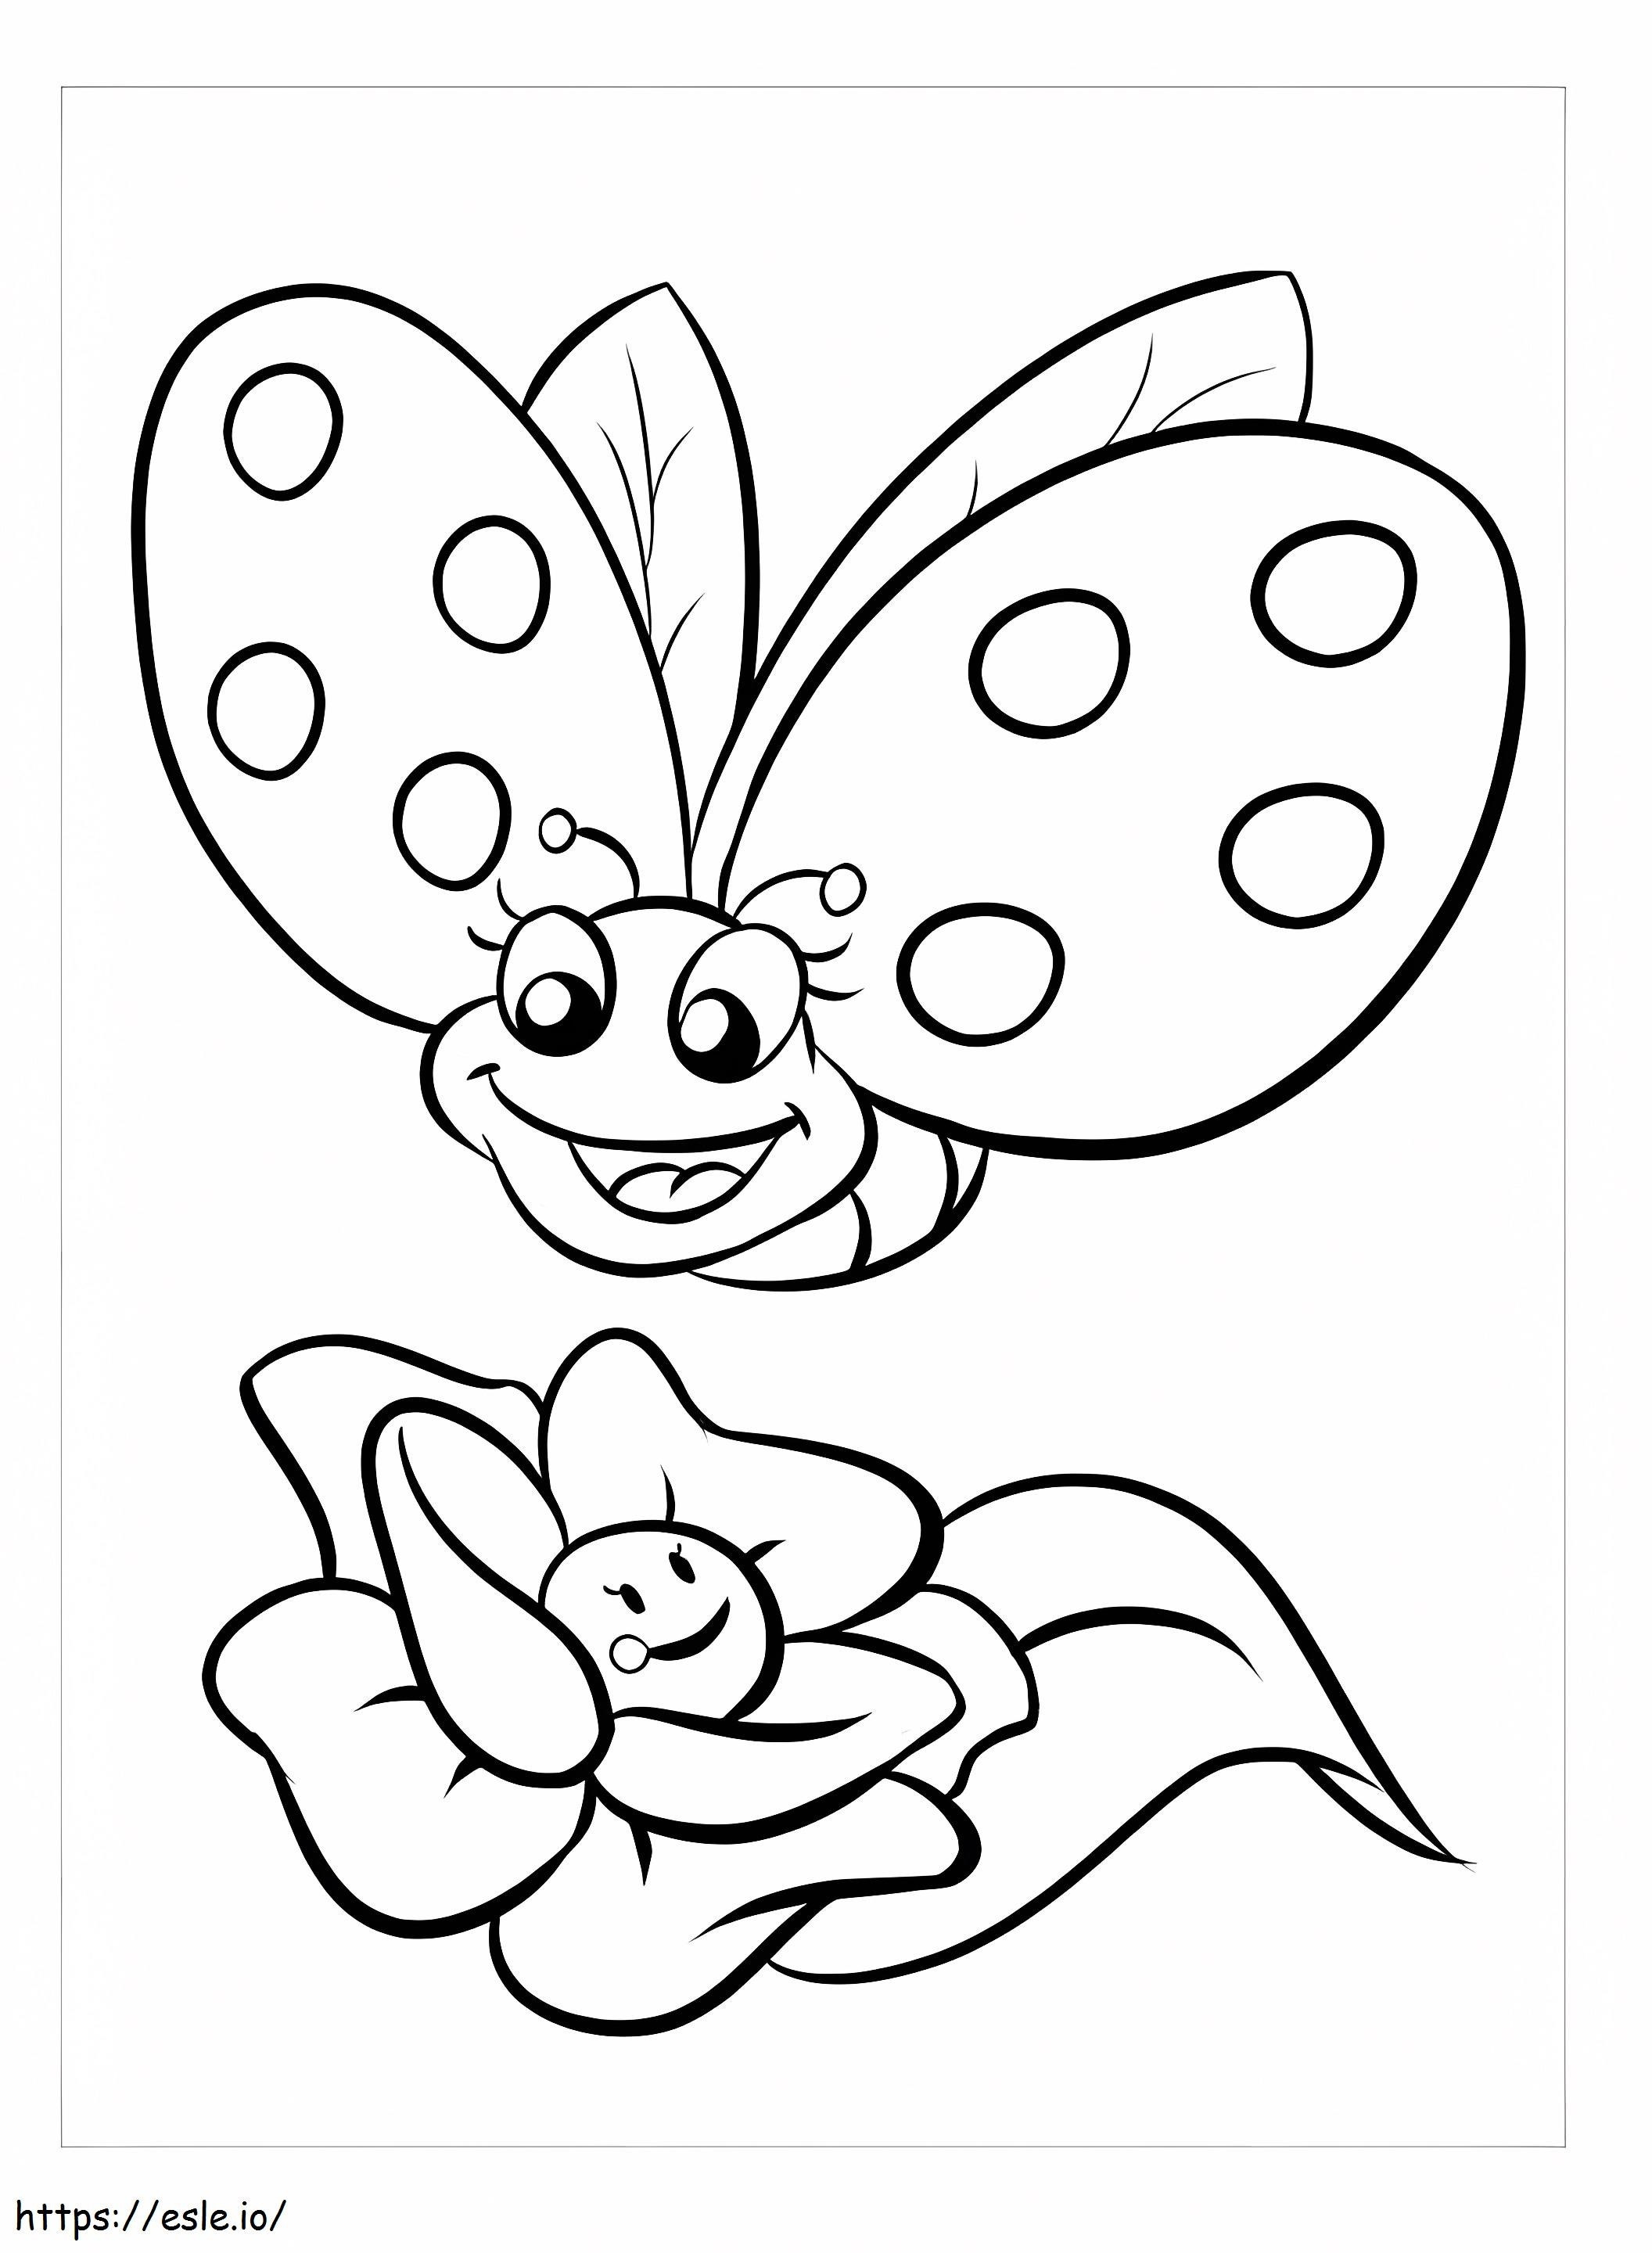 Básico Mariposa Y Flor Kawaii para colorear